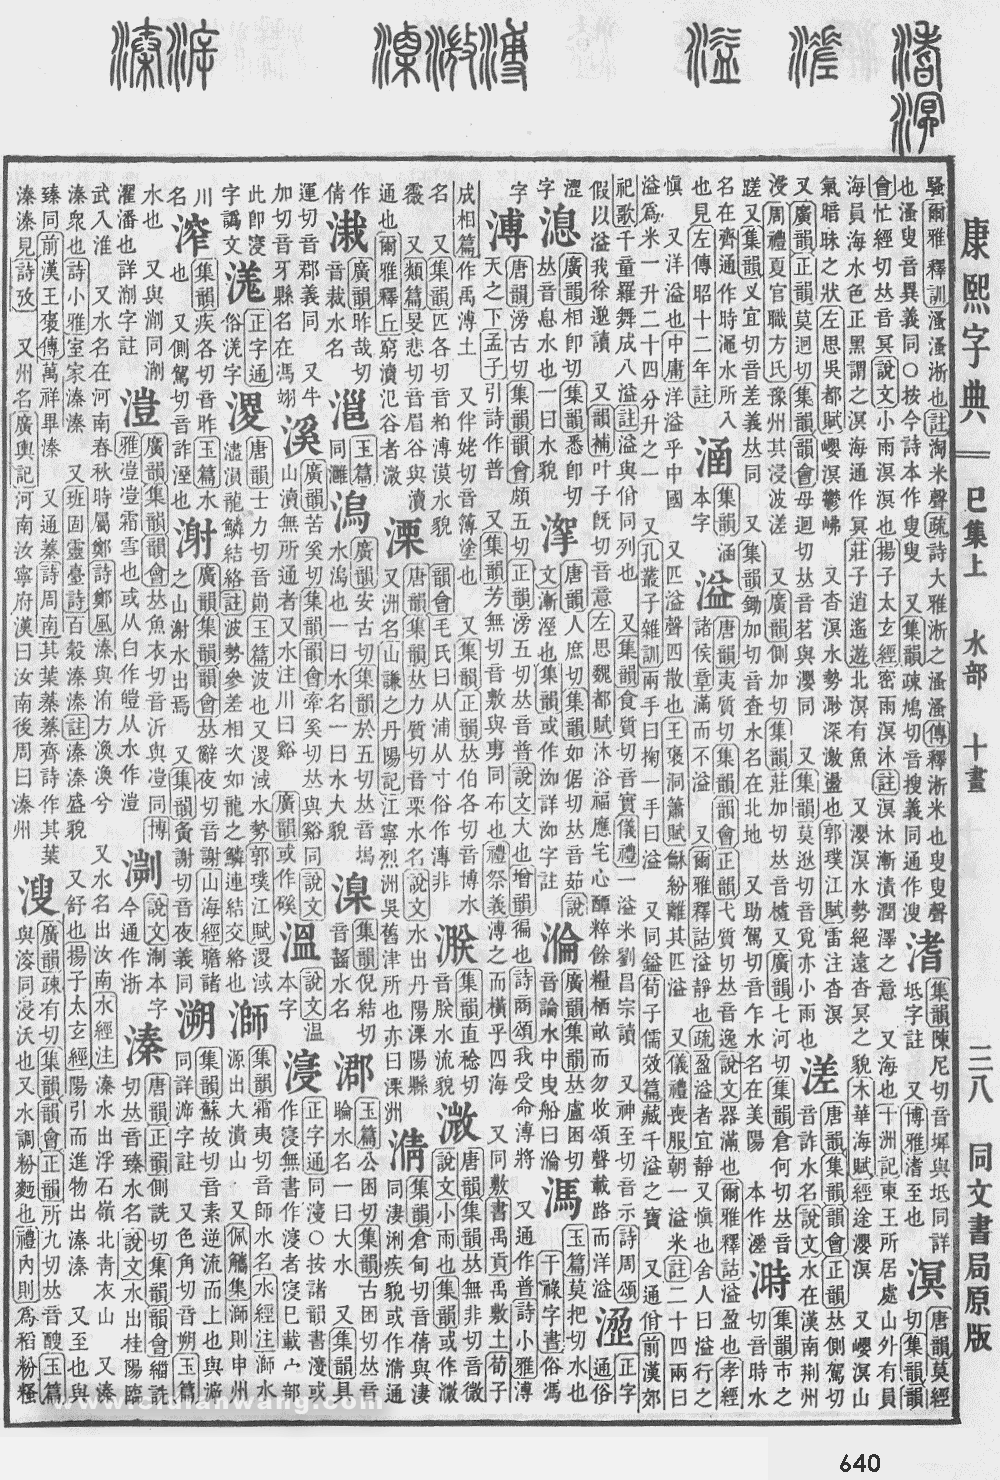 康熙字典掃描版第640頁